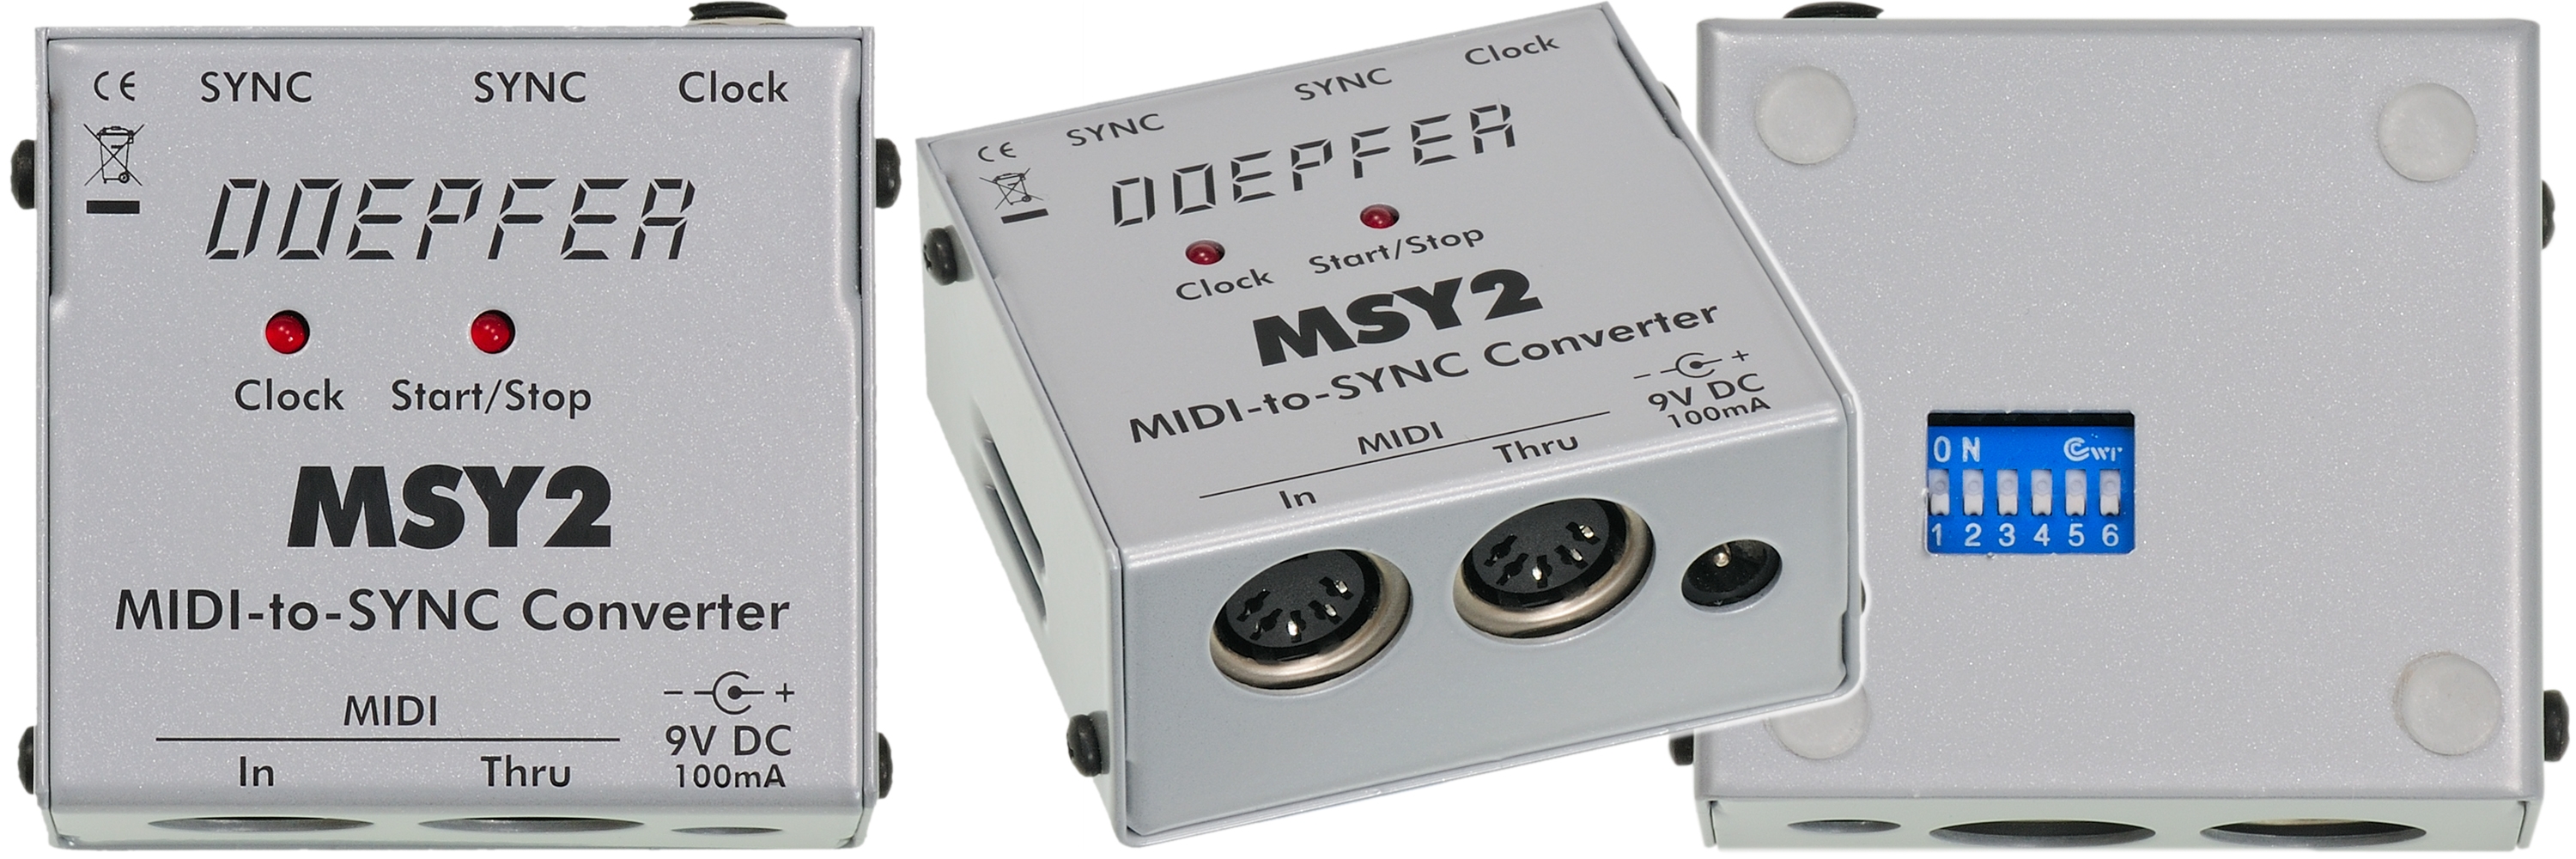 Миди или станция 2 сравнение. Миди конвертер. Doepfer MMR 4/4 - Midi merge/Router. Sync24. Doepfer Pocket Electronic v1.0.